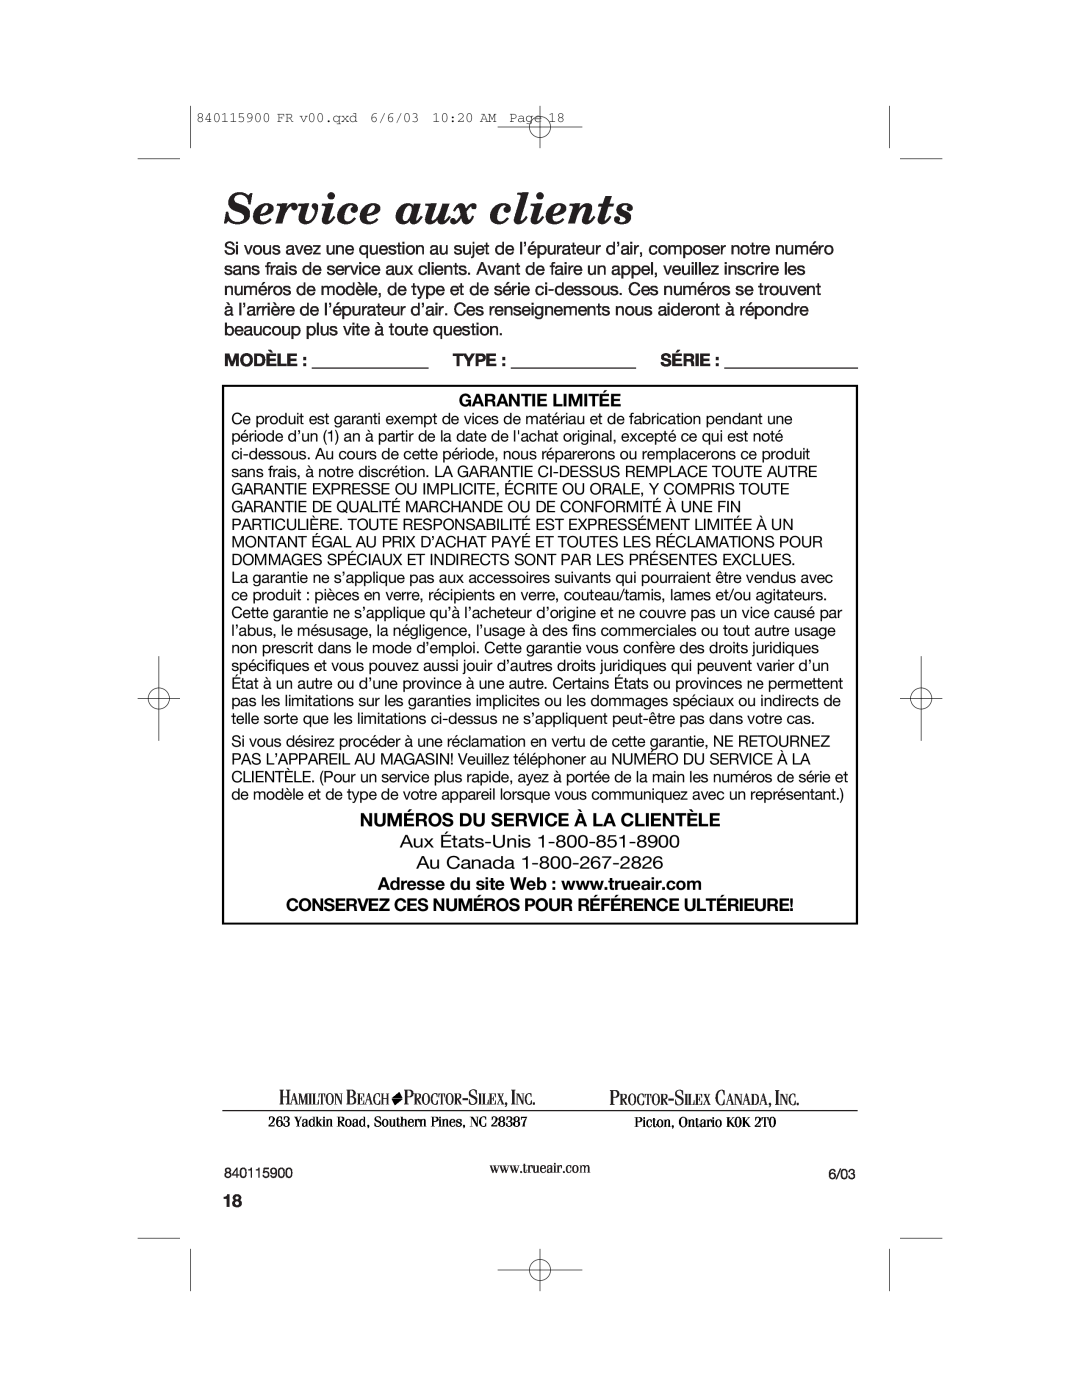 Hamilton Beach 840115900 manual Service aux clients, Numéros Du Service À La Clientèle 